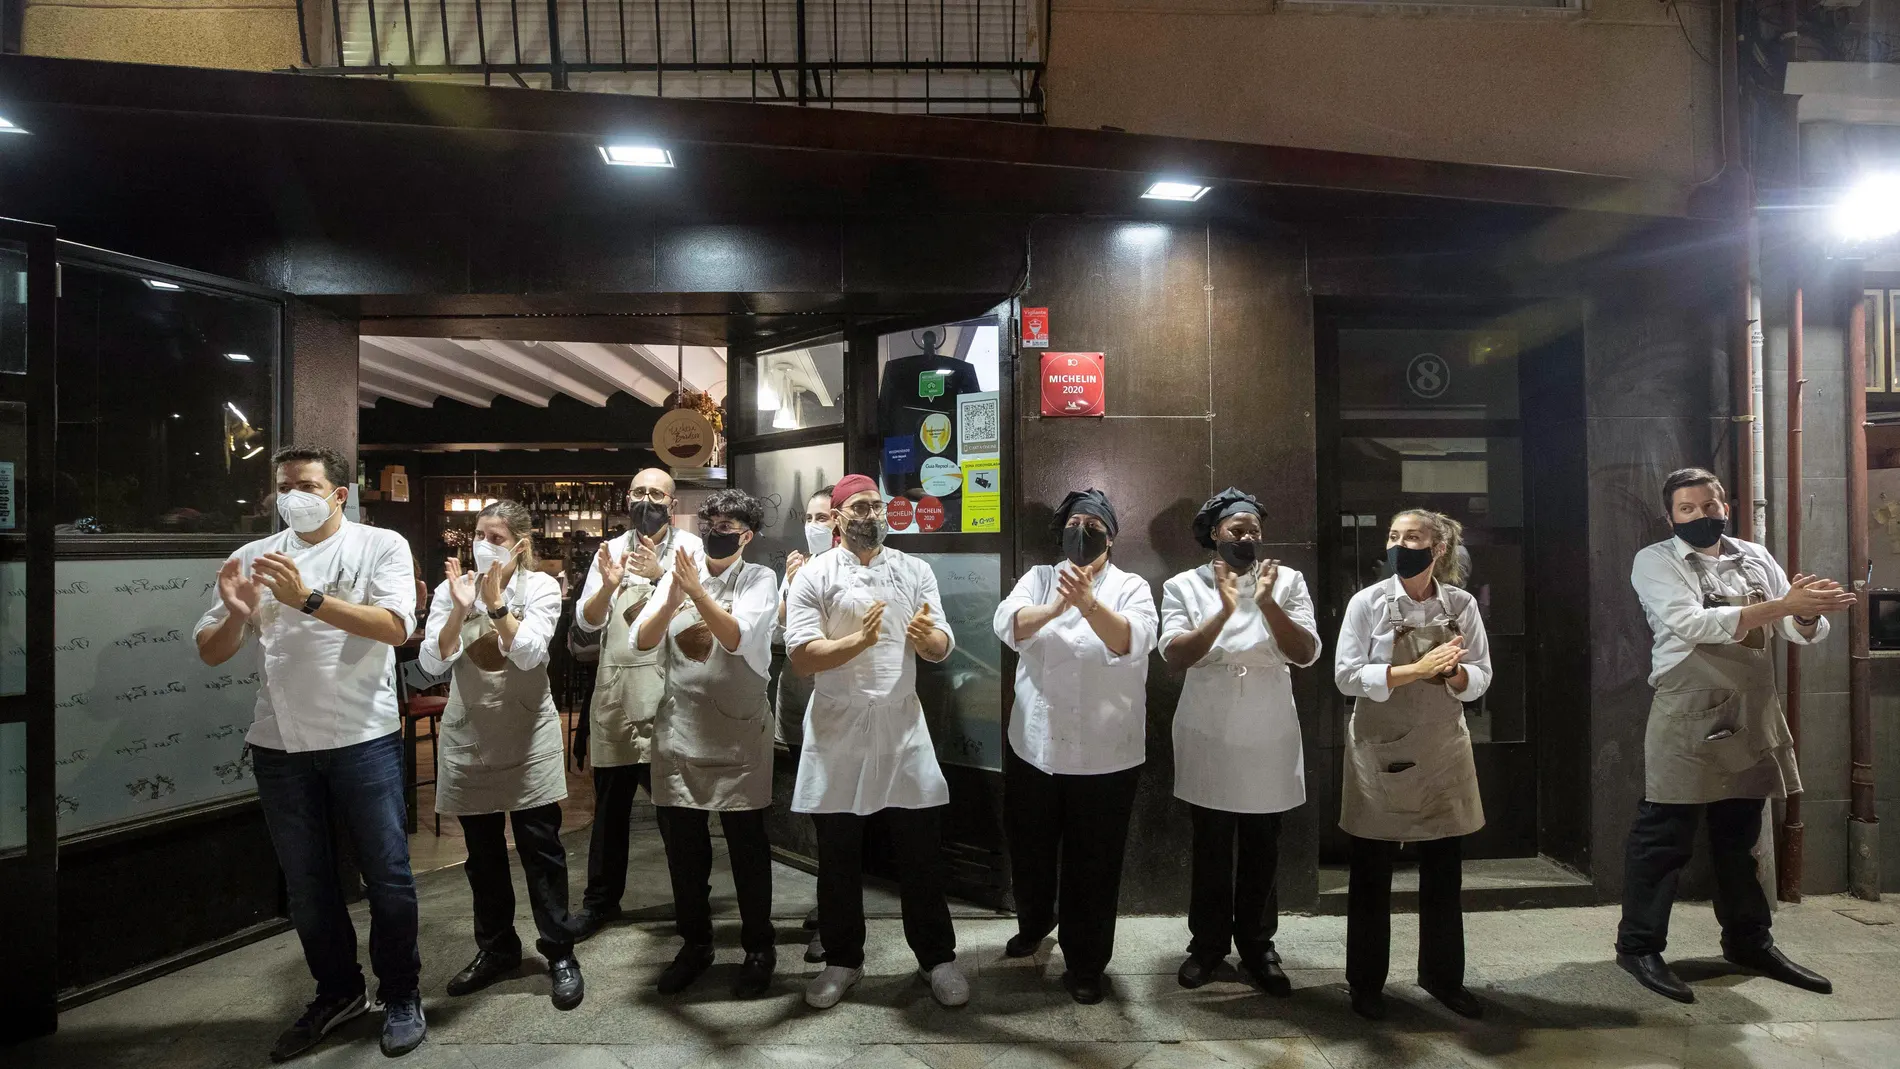 Camareros y cocineros de un restaurante de Murcia ha participado esta noche en el aplauso que los trabajadores de la hostelería de Murcia este viernes, momentos antes del cierre. A partir de mañana sábado entra en vigor la orden de la Comunidad de Murcia que obliga a los bares y restaurantes a cerrar durante quince días para frenar los contagios del COVID-19. EFE/Marcial Guillén